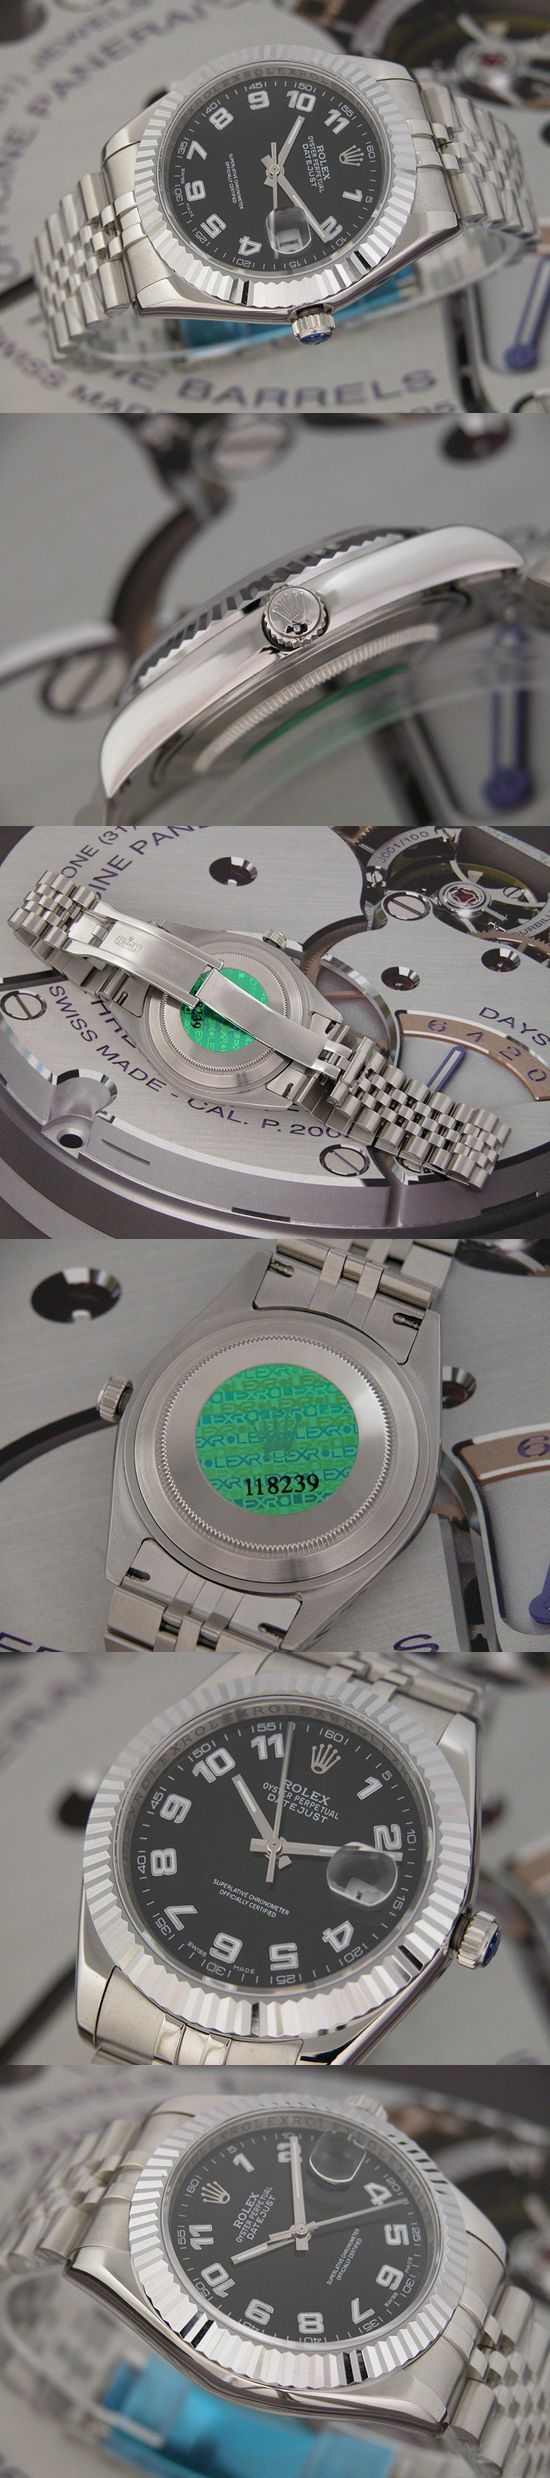 おしゃれなブランド時計がロレックス-デイトジャスト-ROLEX-118239-105-男性用を提供します.